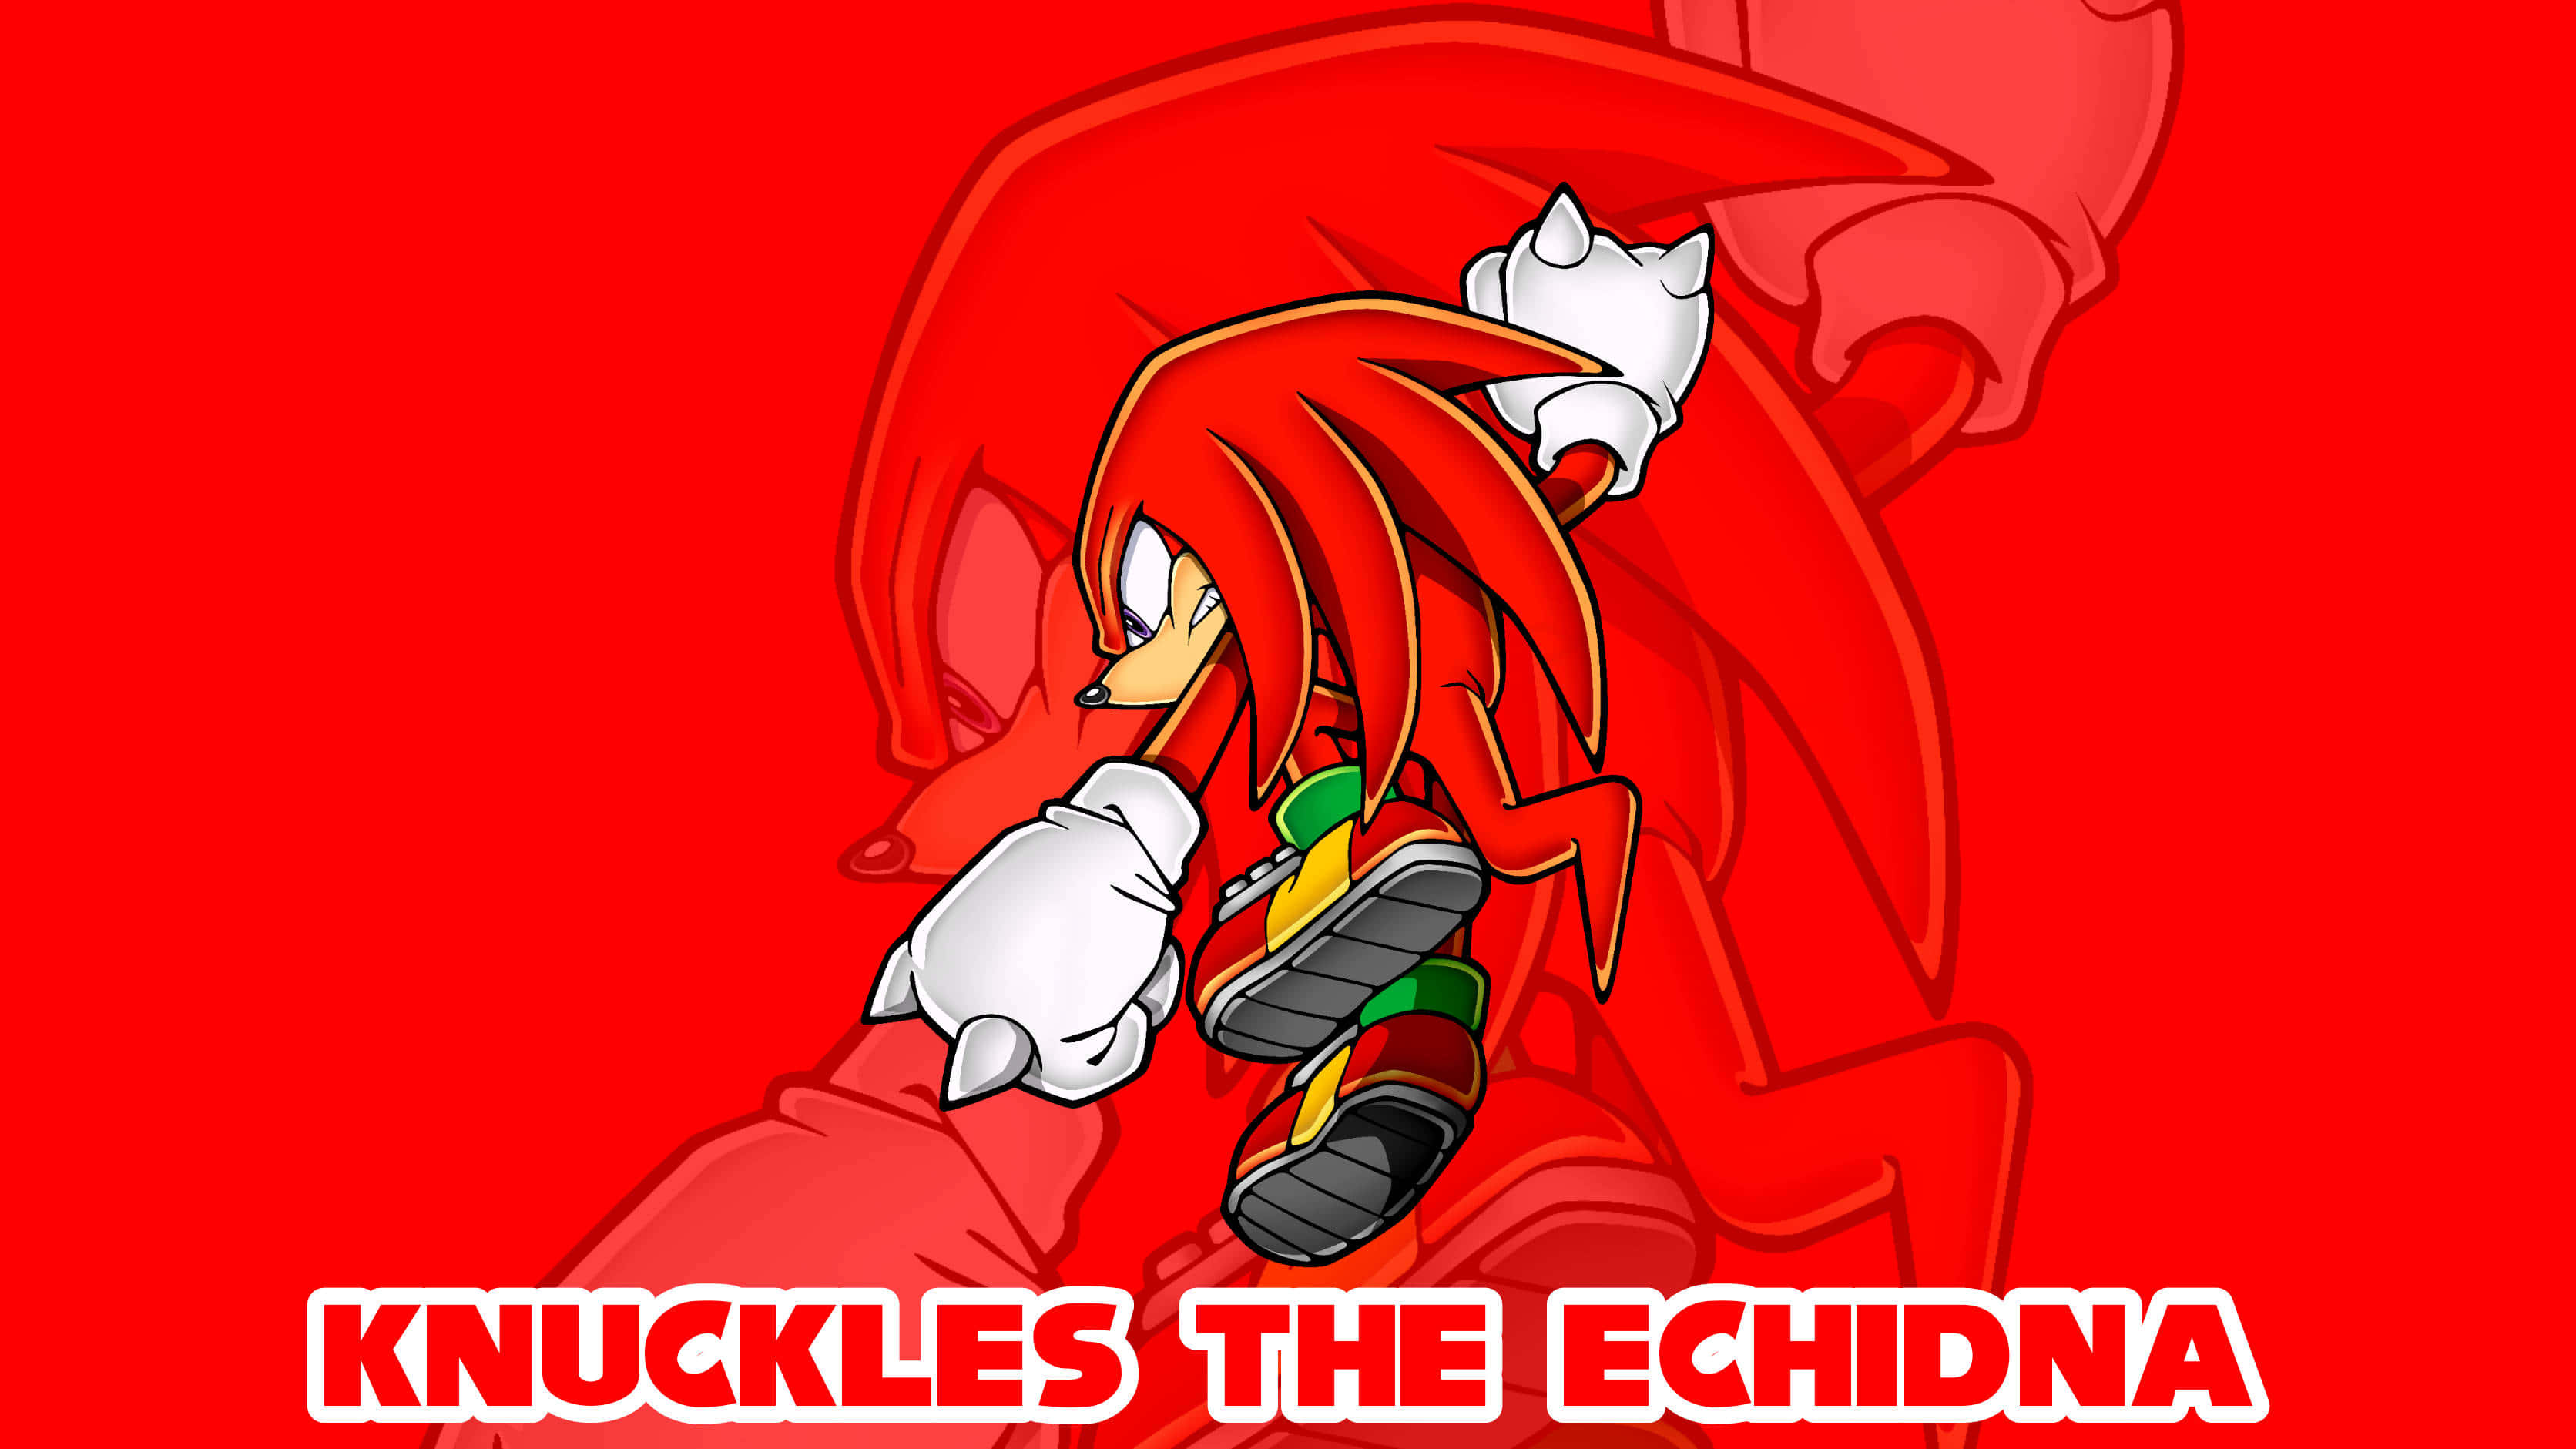 Knuckles The Echidna Fanart ligner som en tegneseriestreg. Wallpaper